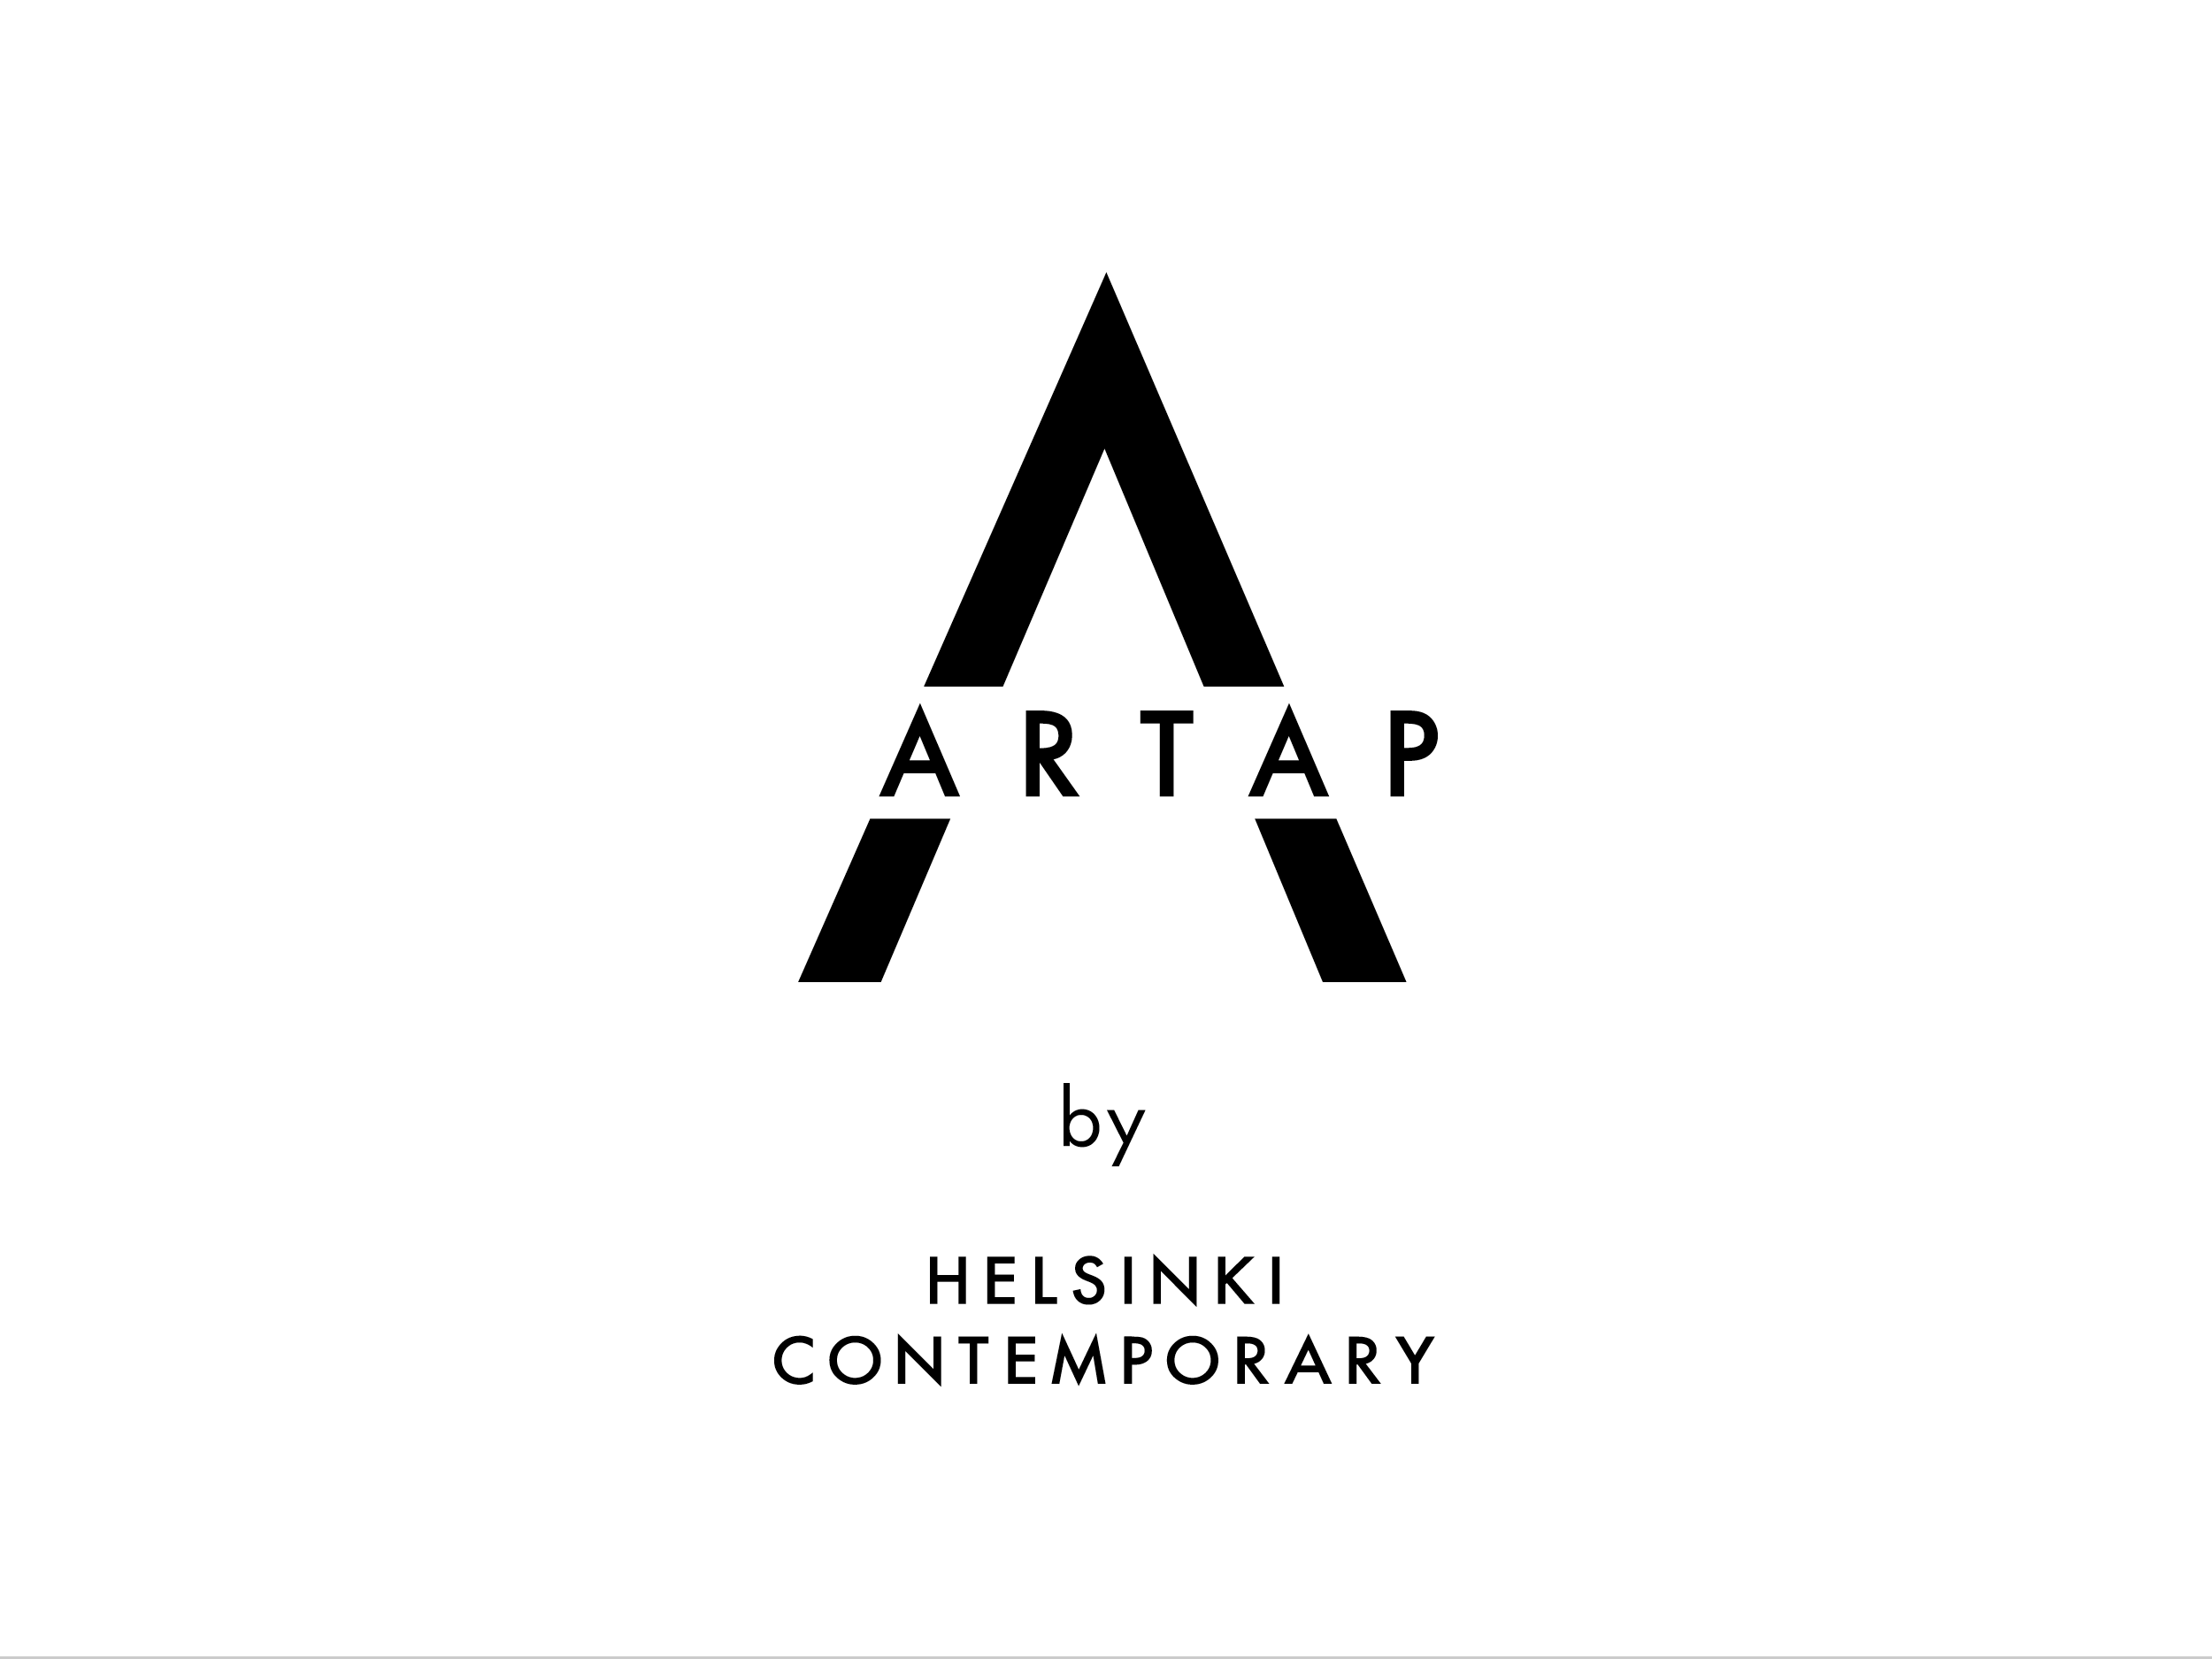  Artap by Helsinki Contemporary 